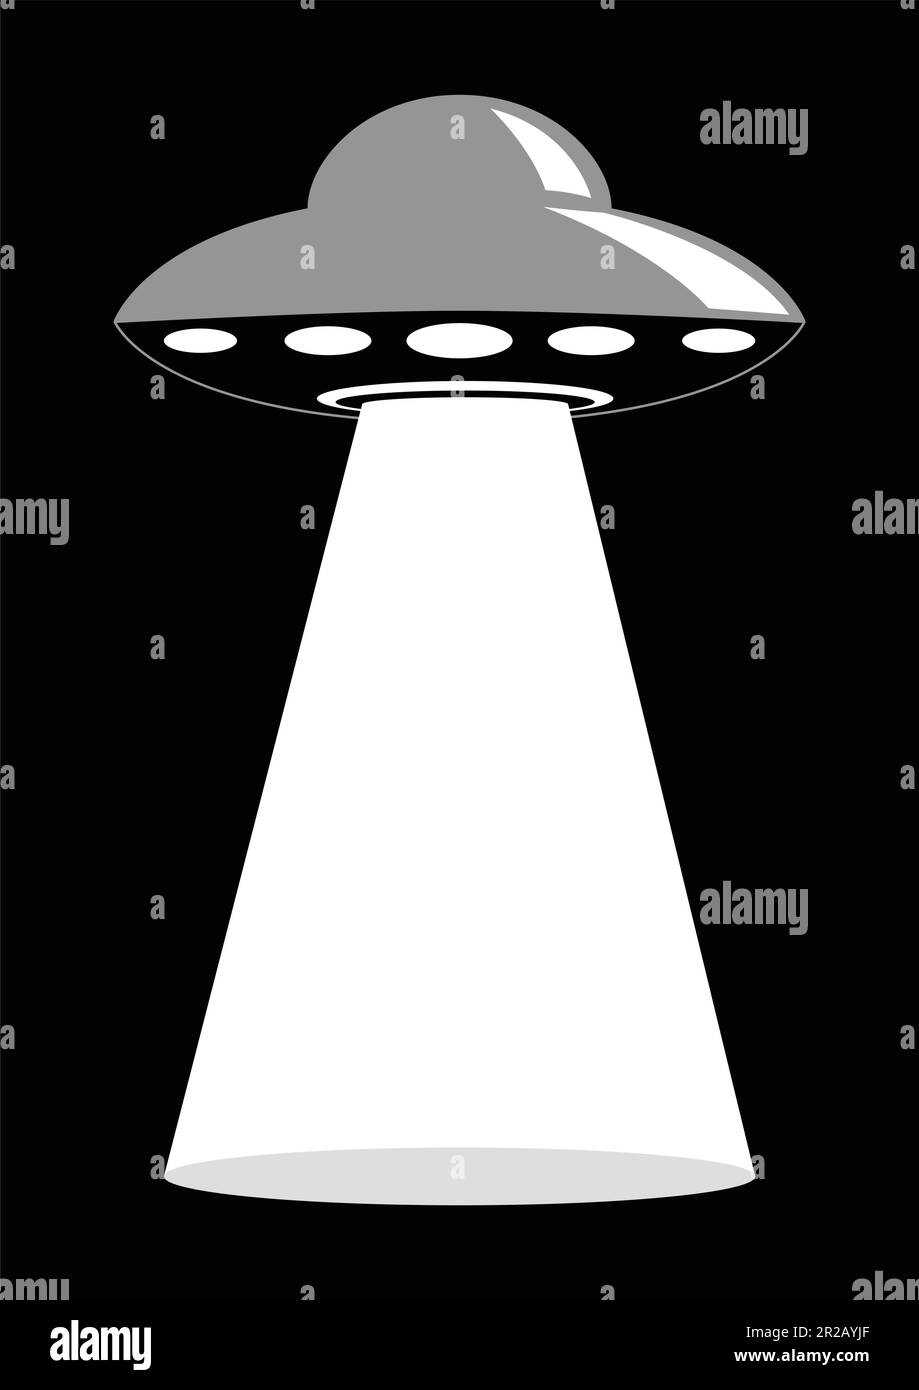 Einfache Grafik des nicht identifizierten Flugobjekts, UFO Stock Vektor